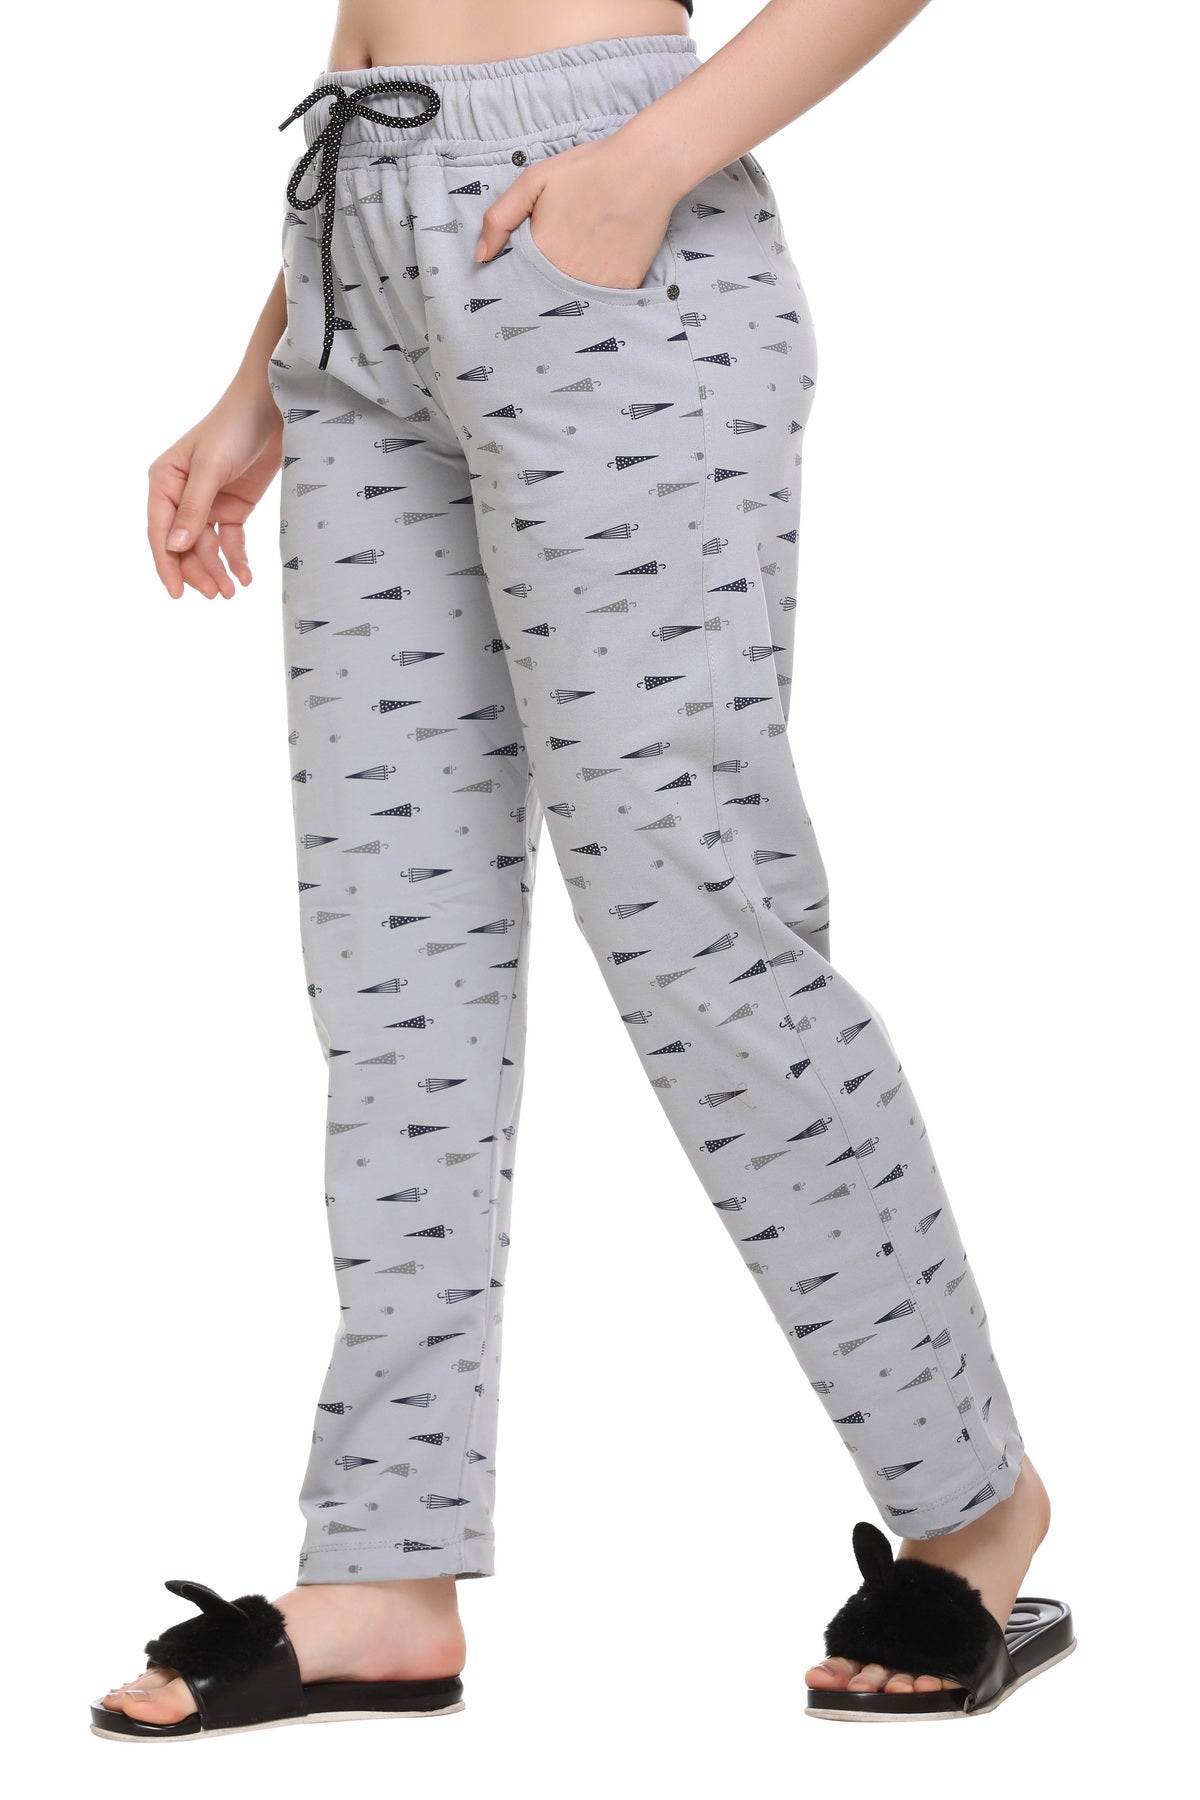 Cotton Printed Pajamas For Women